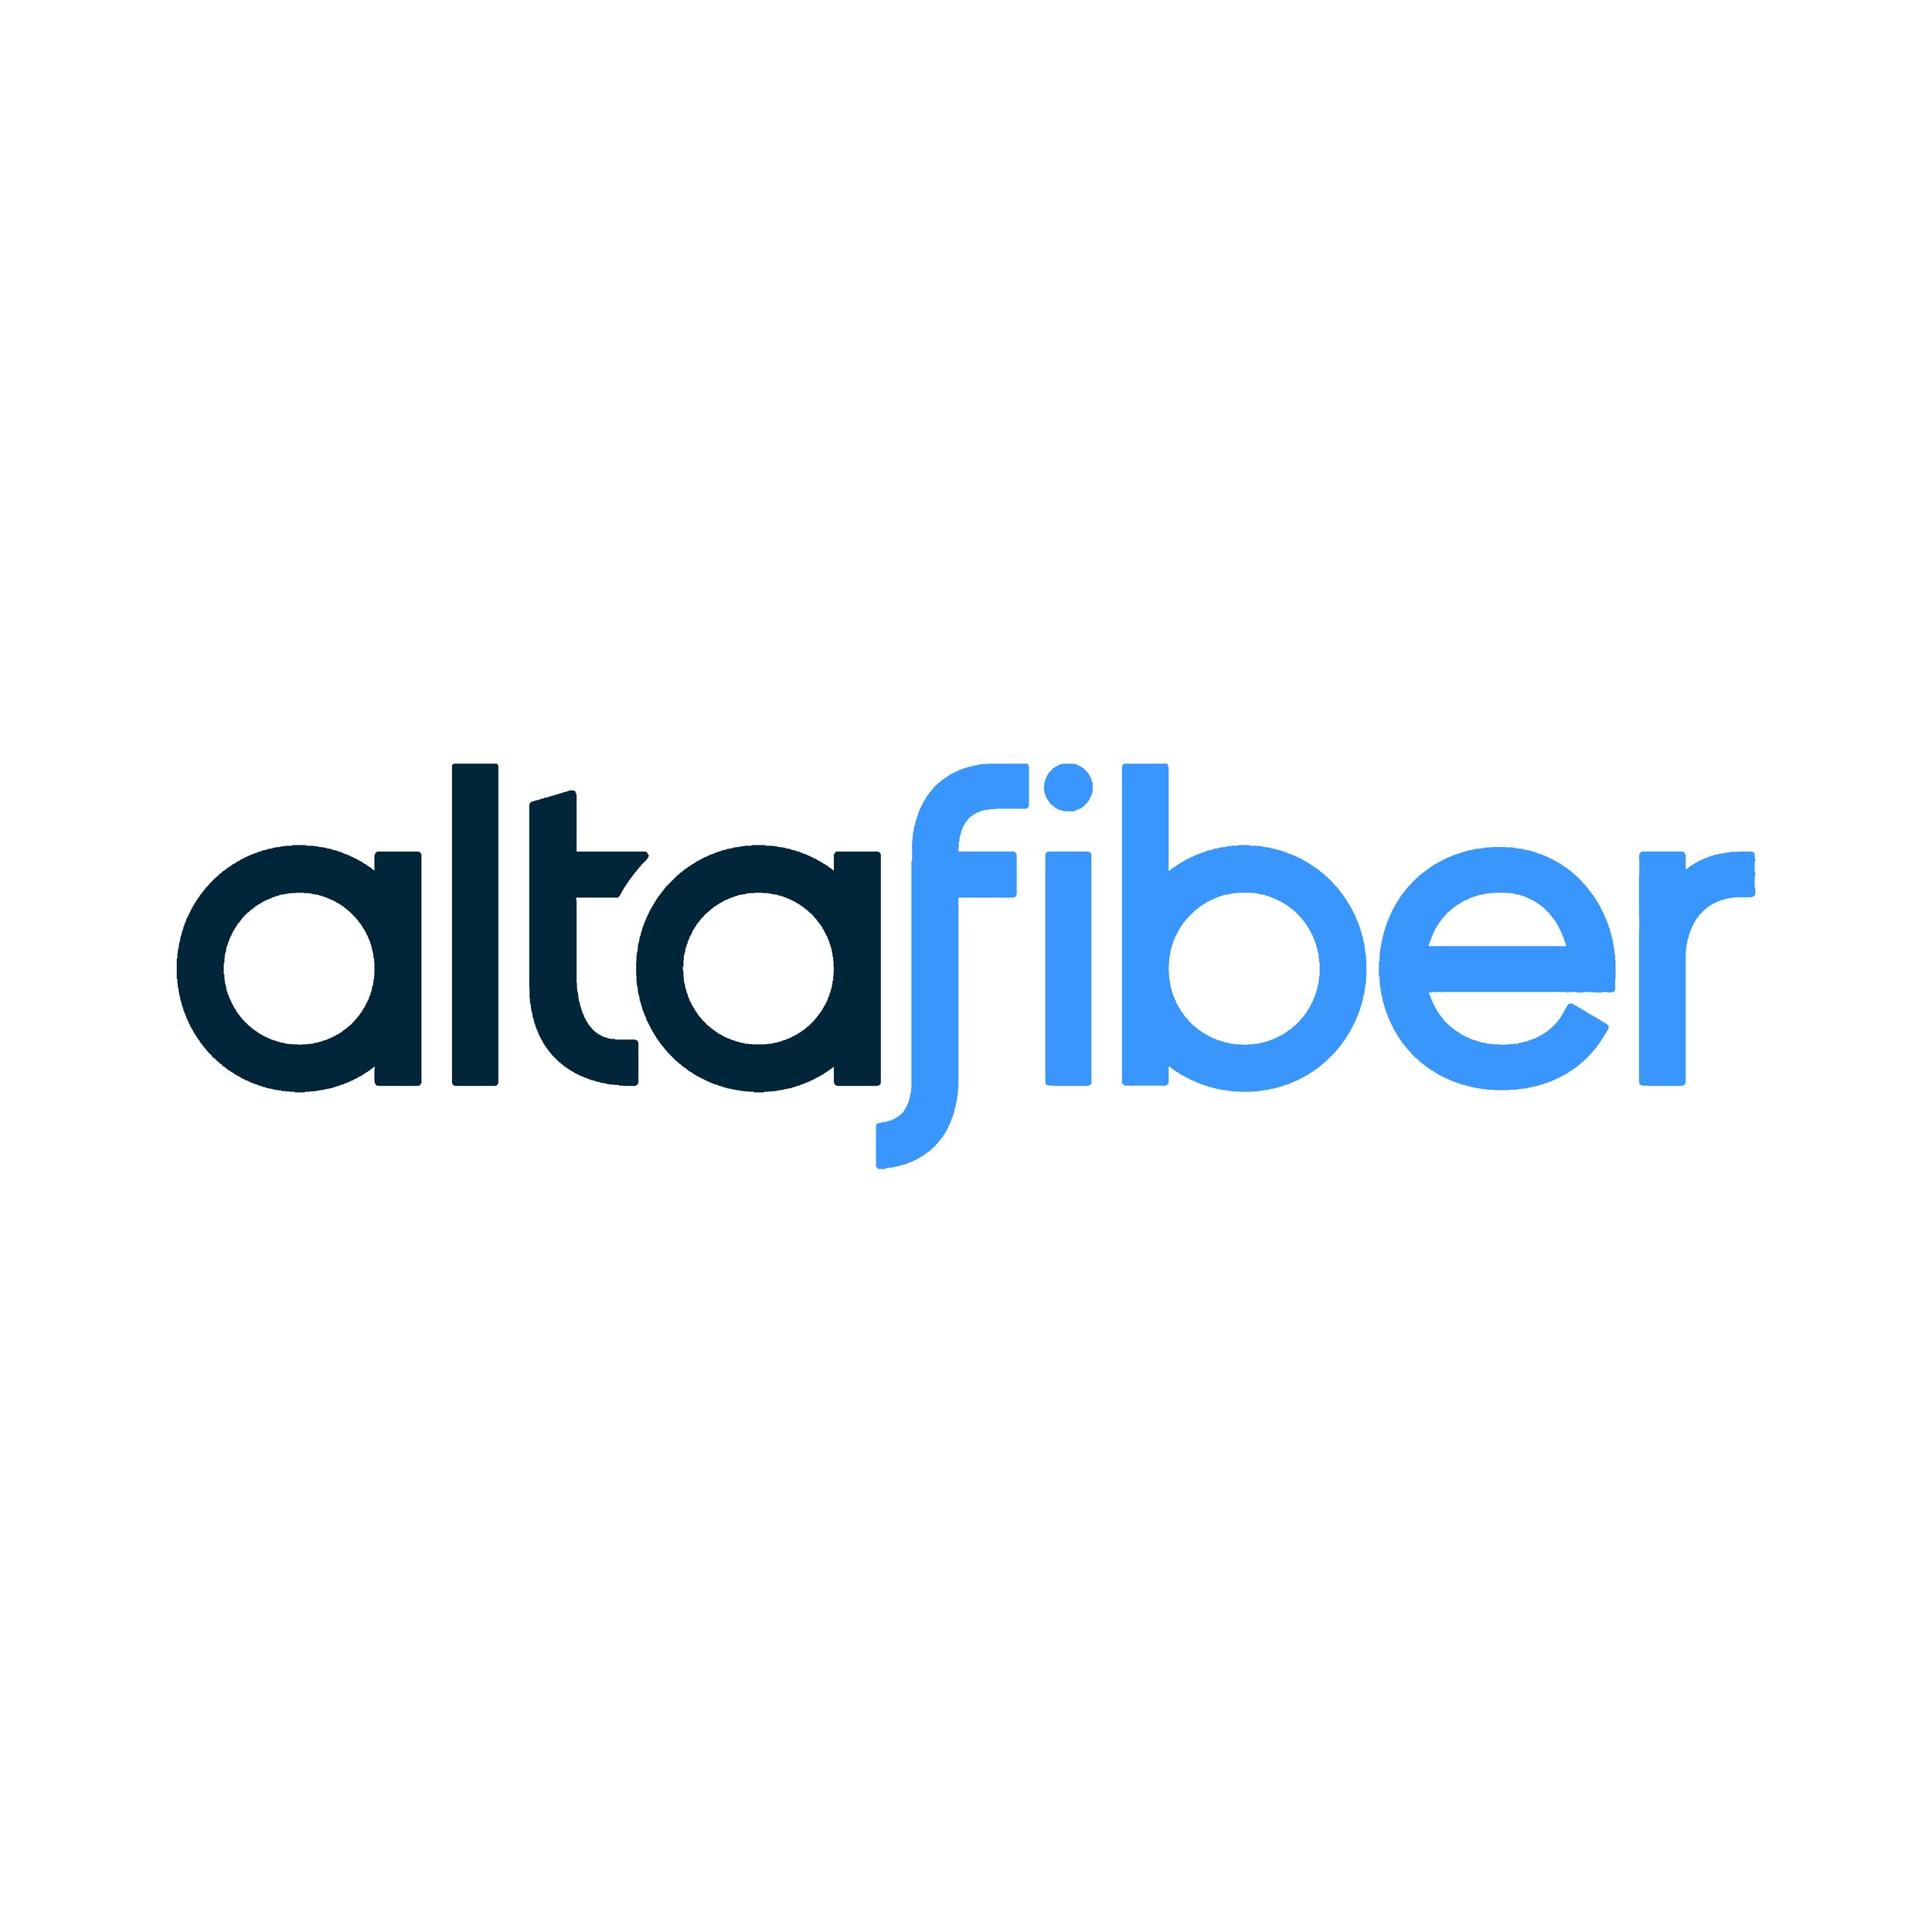 Altafiber-Logo.jpg